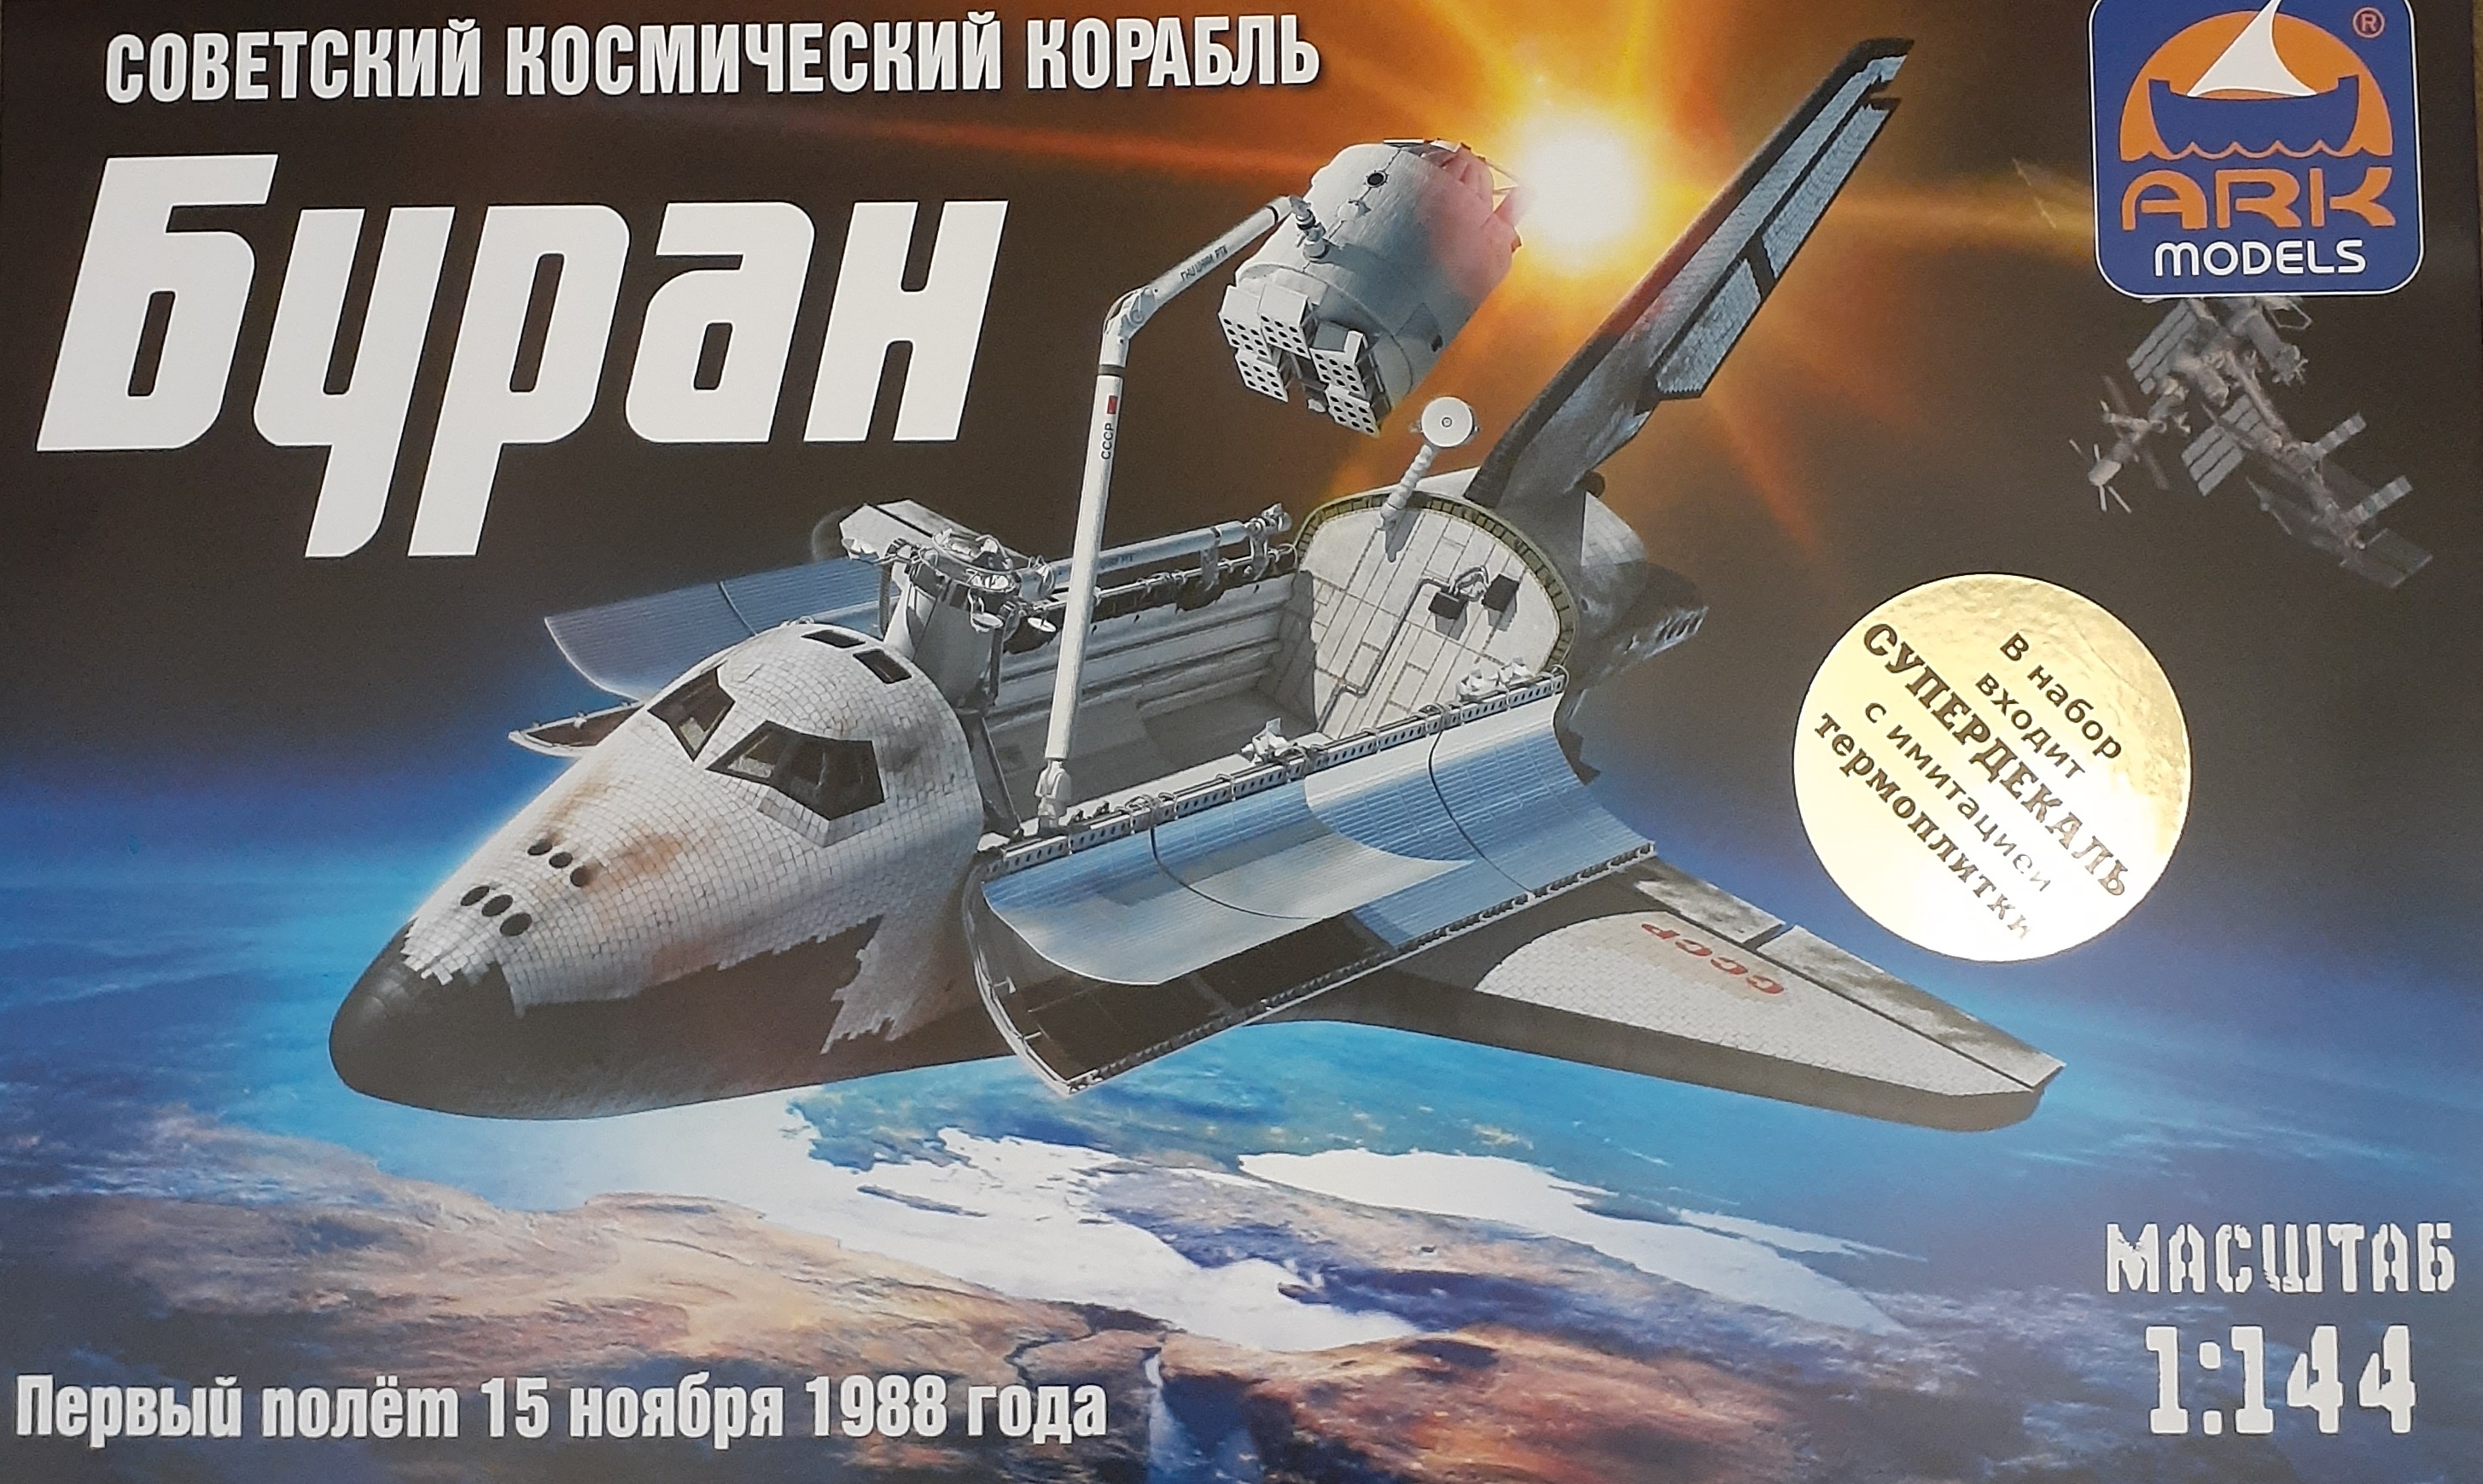 14402d  космос  Космический корабль Буран + супер декаль  (1:144)